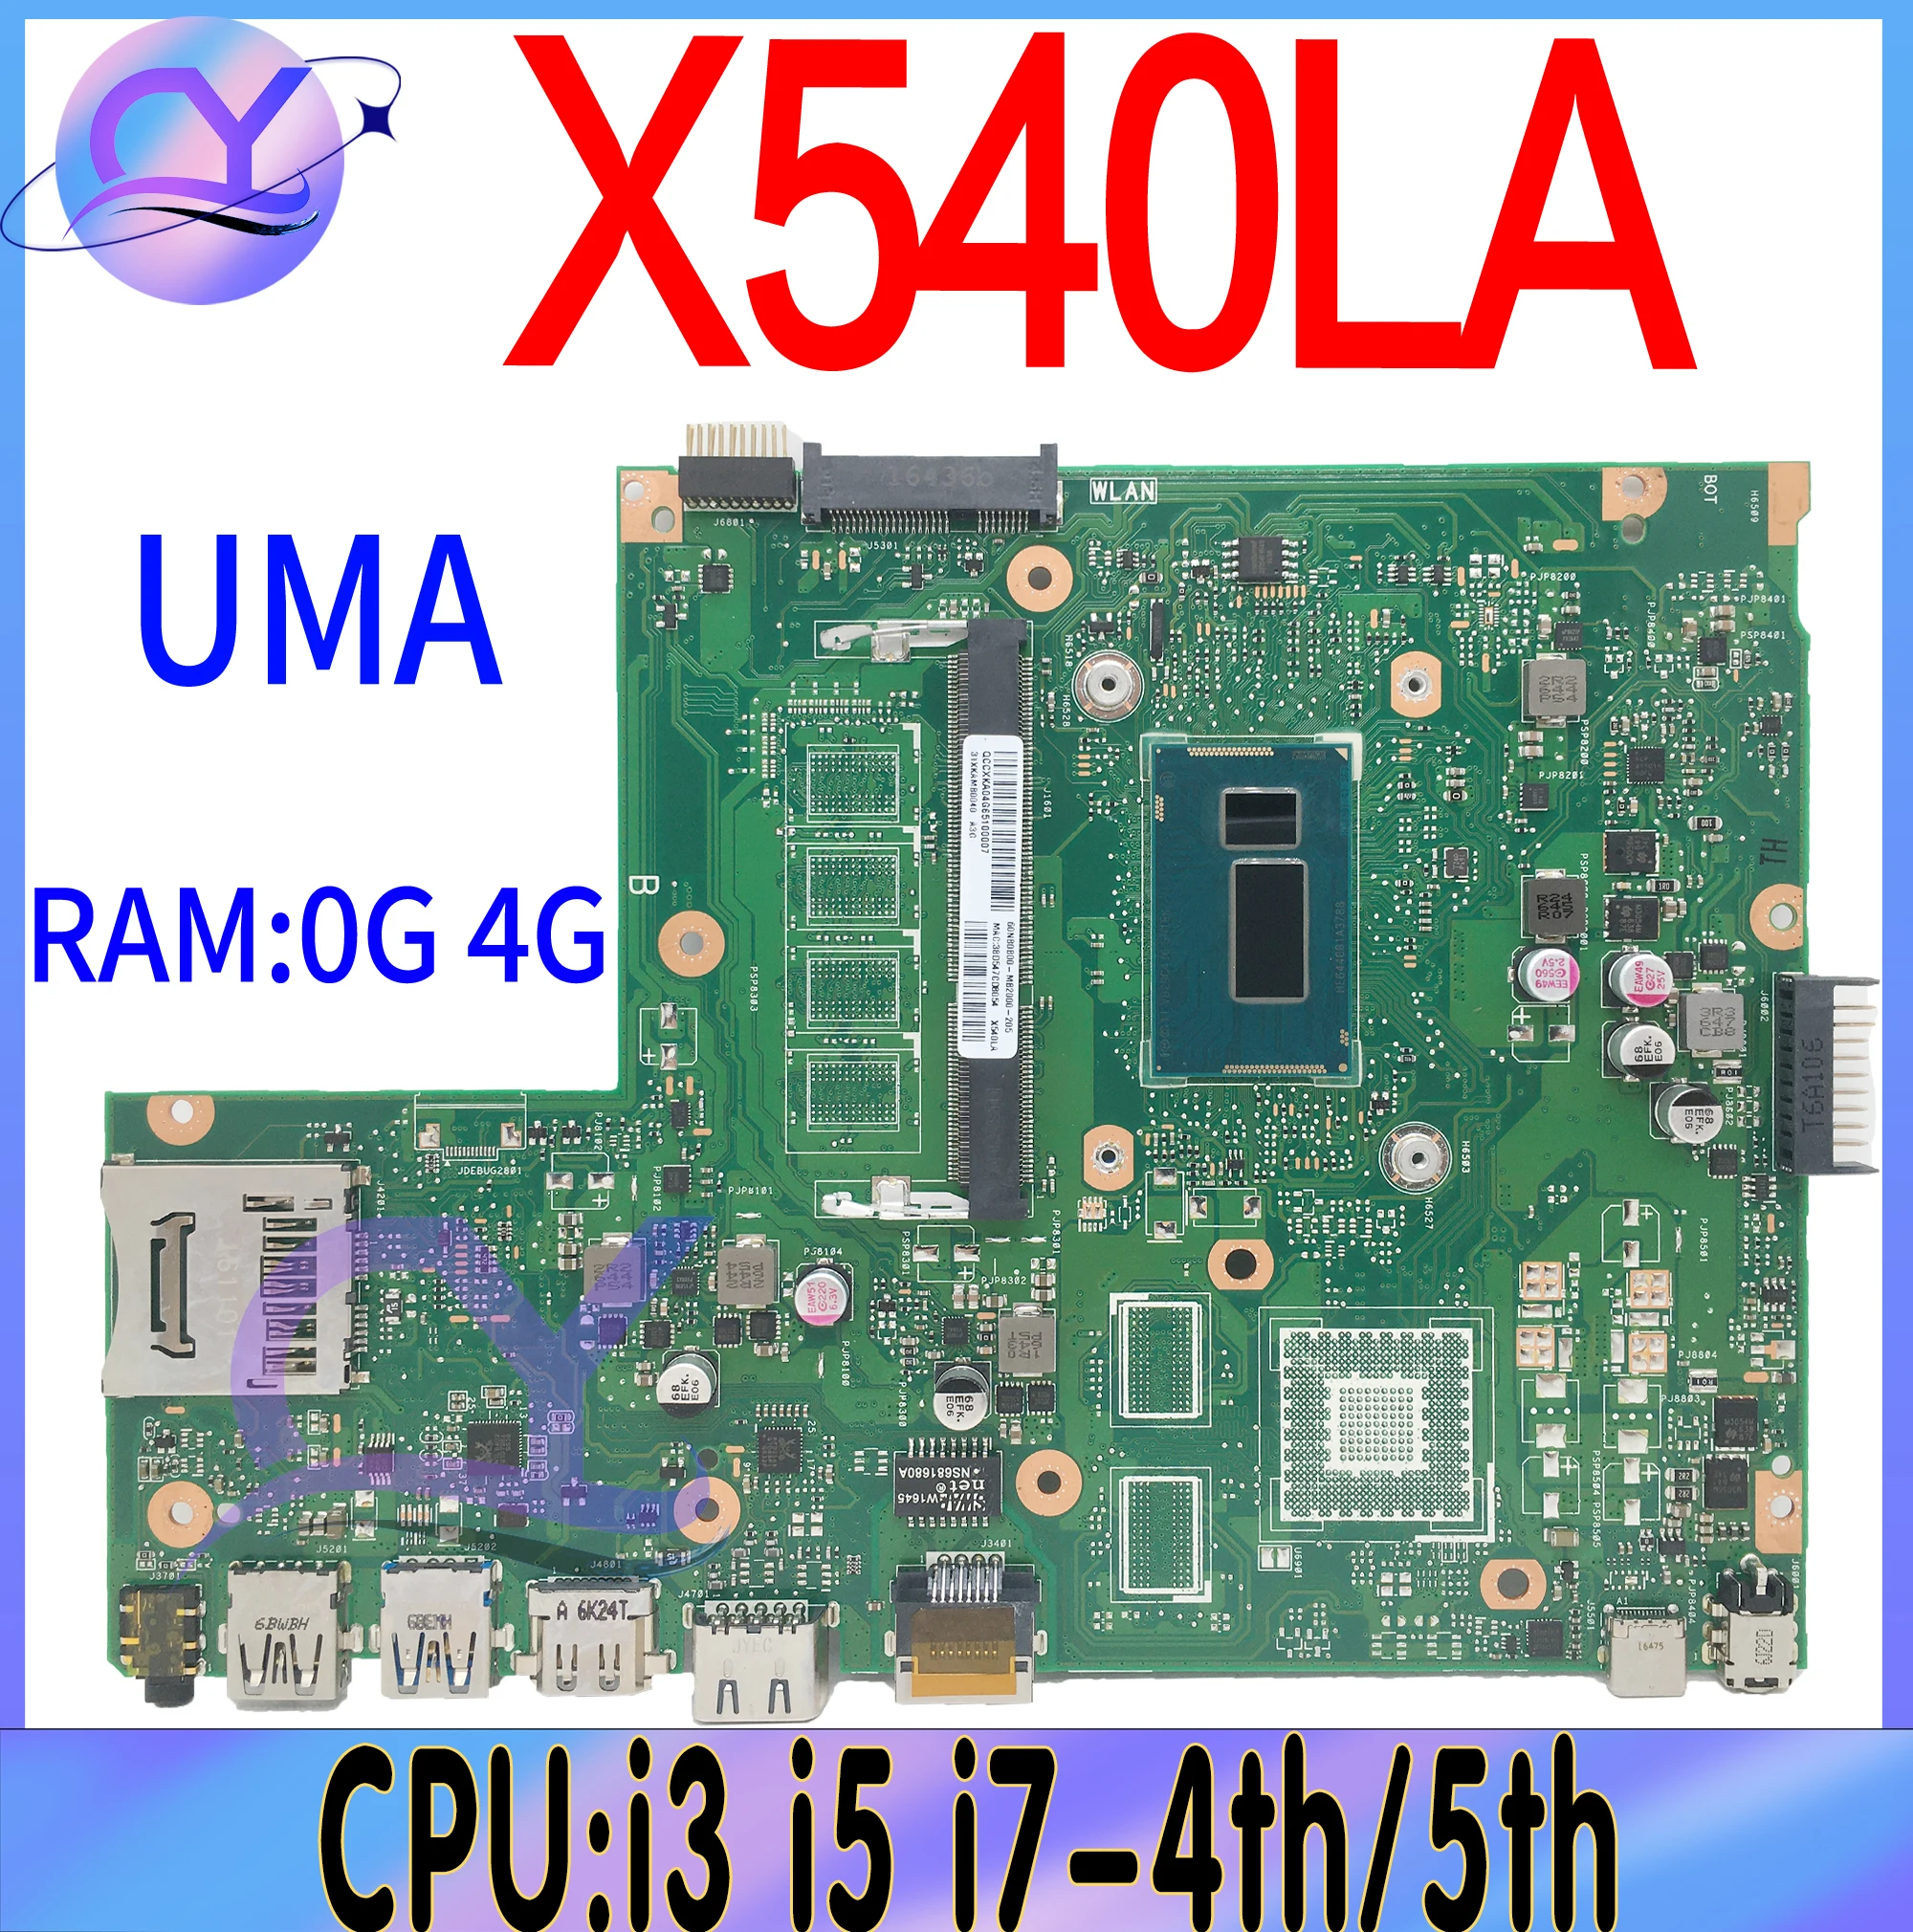 X540LA Mainboard For ASUS VivoBook X540L A540LA F540LA K540LA R540LA X540LJ  Laptop Motherboard W/ i3 i5 i7-4th/5th 0G/4G UMA - AliExpress